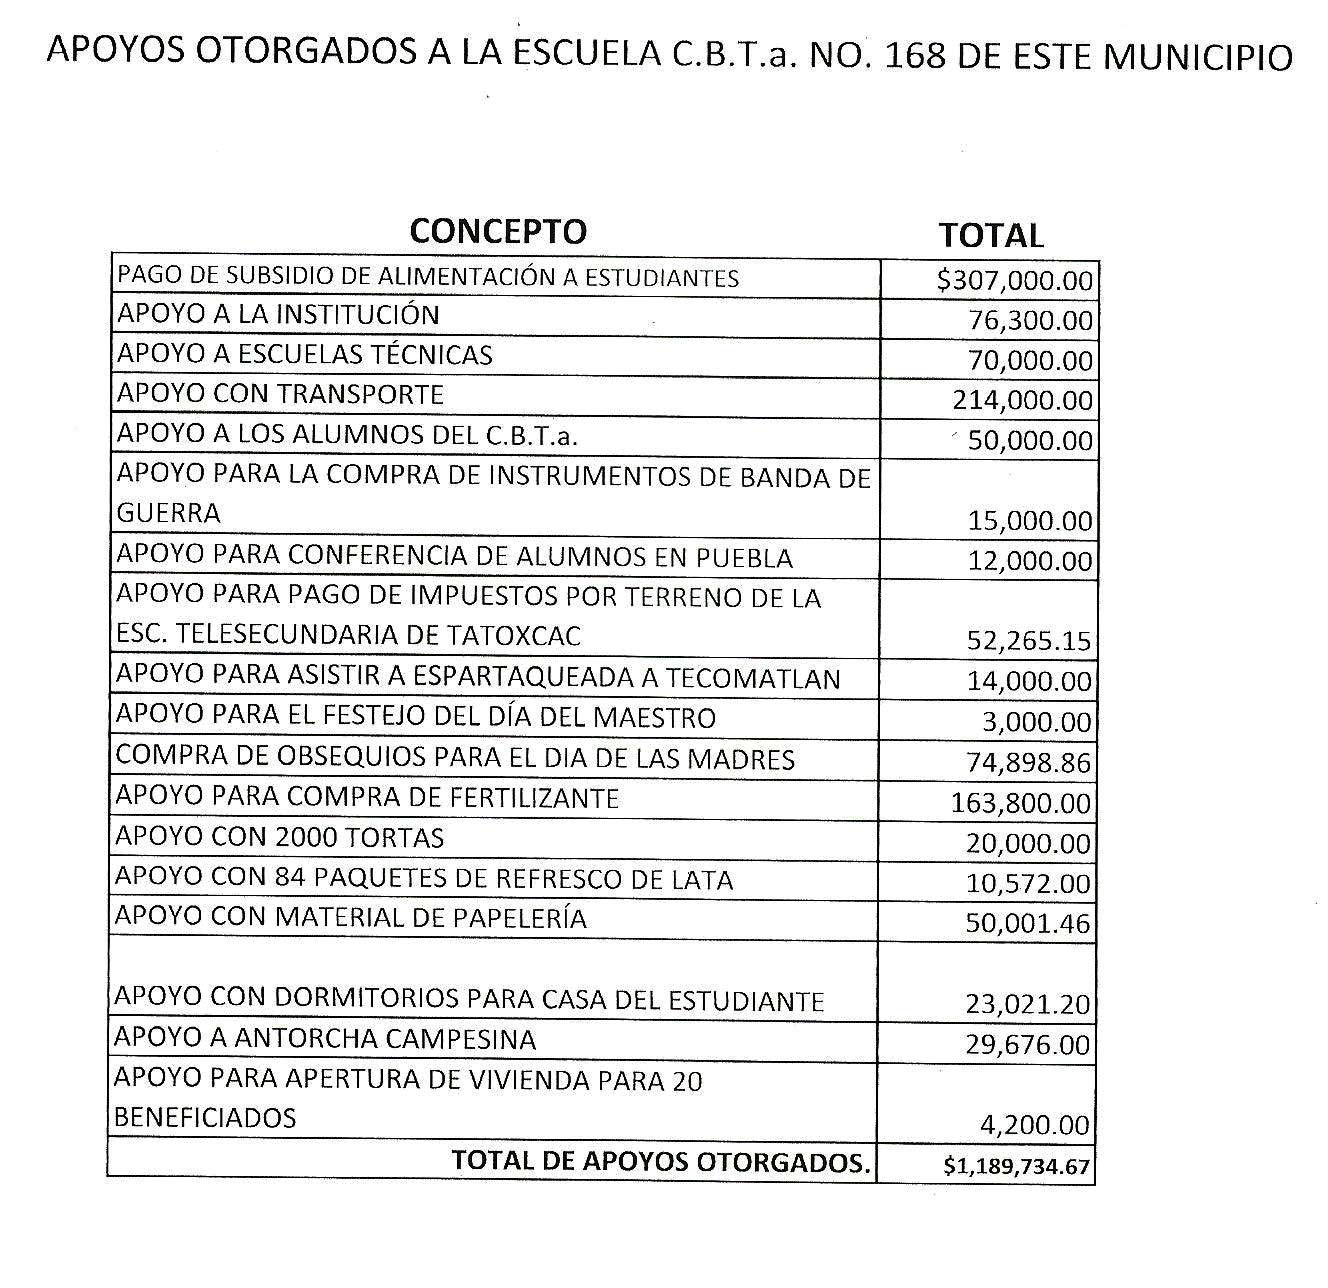 Revela alcalde de Zacapoaxtla extorsión millonaria cometida por líder antorchista